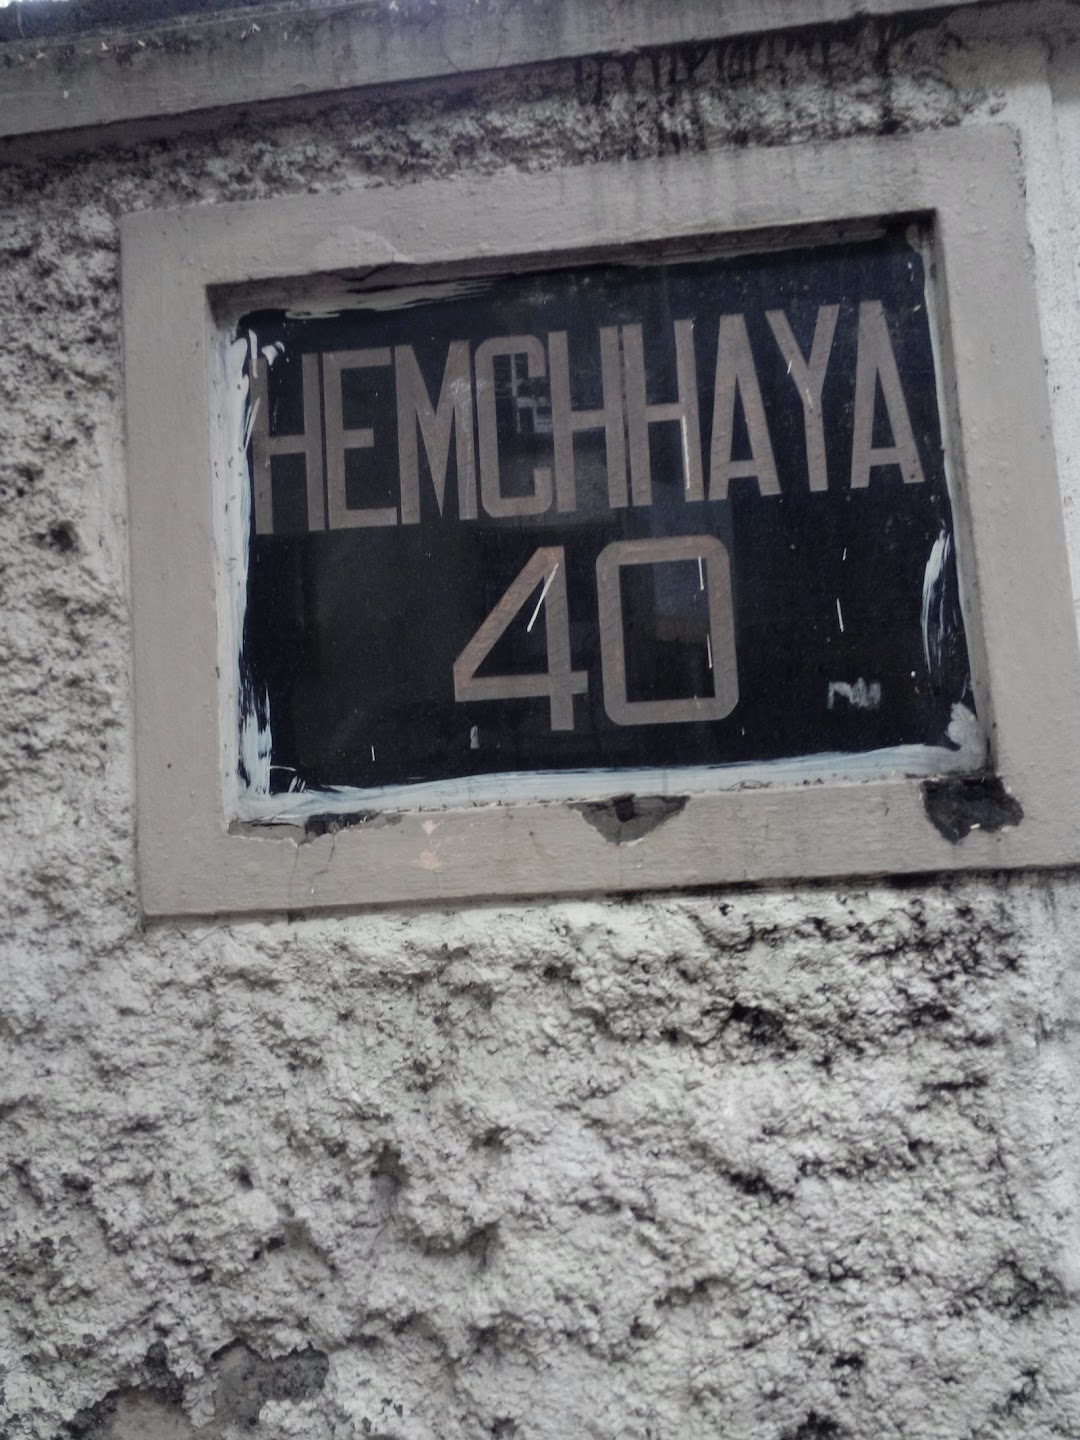 Hemchhaya